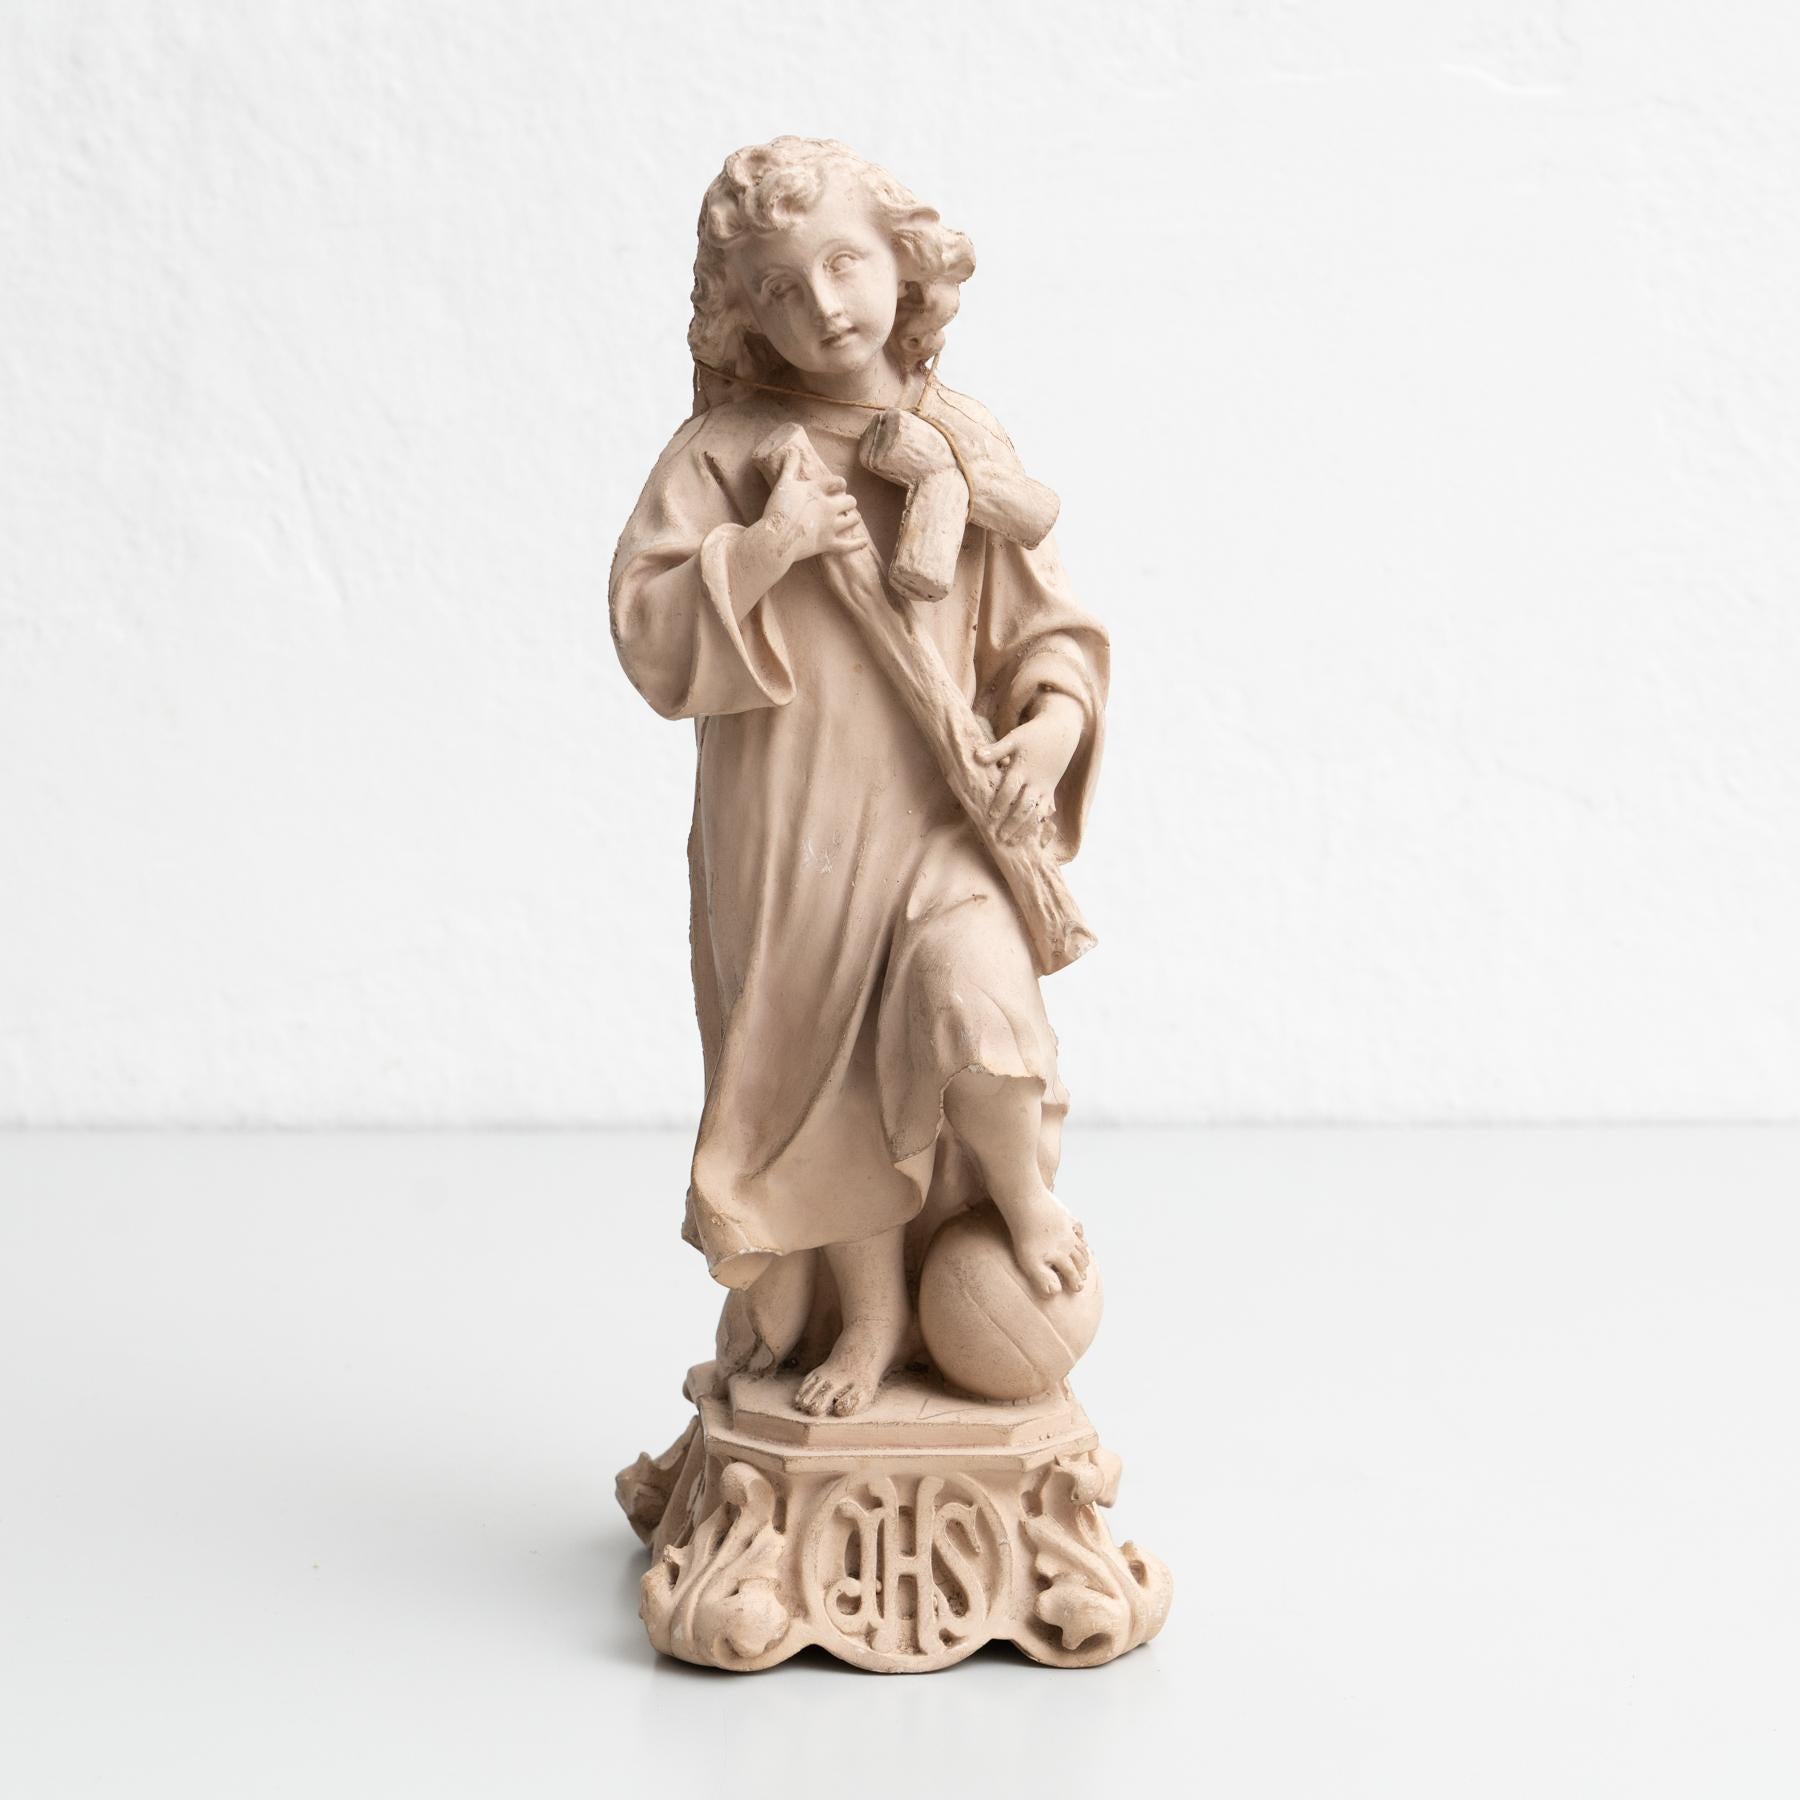 Figurine religieuse traditionnelle en plâtre représentant l'enfant Jésus-Christ.

Fabriqué dans un atelier catalan traditionnel à Olot, en Espagne, vers 1950.

En état d'origine, avec une usure mineure conforme à l'âge et à l'utilisation, préservant